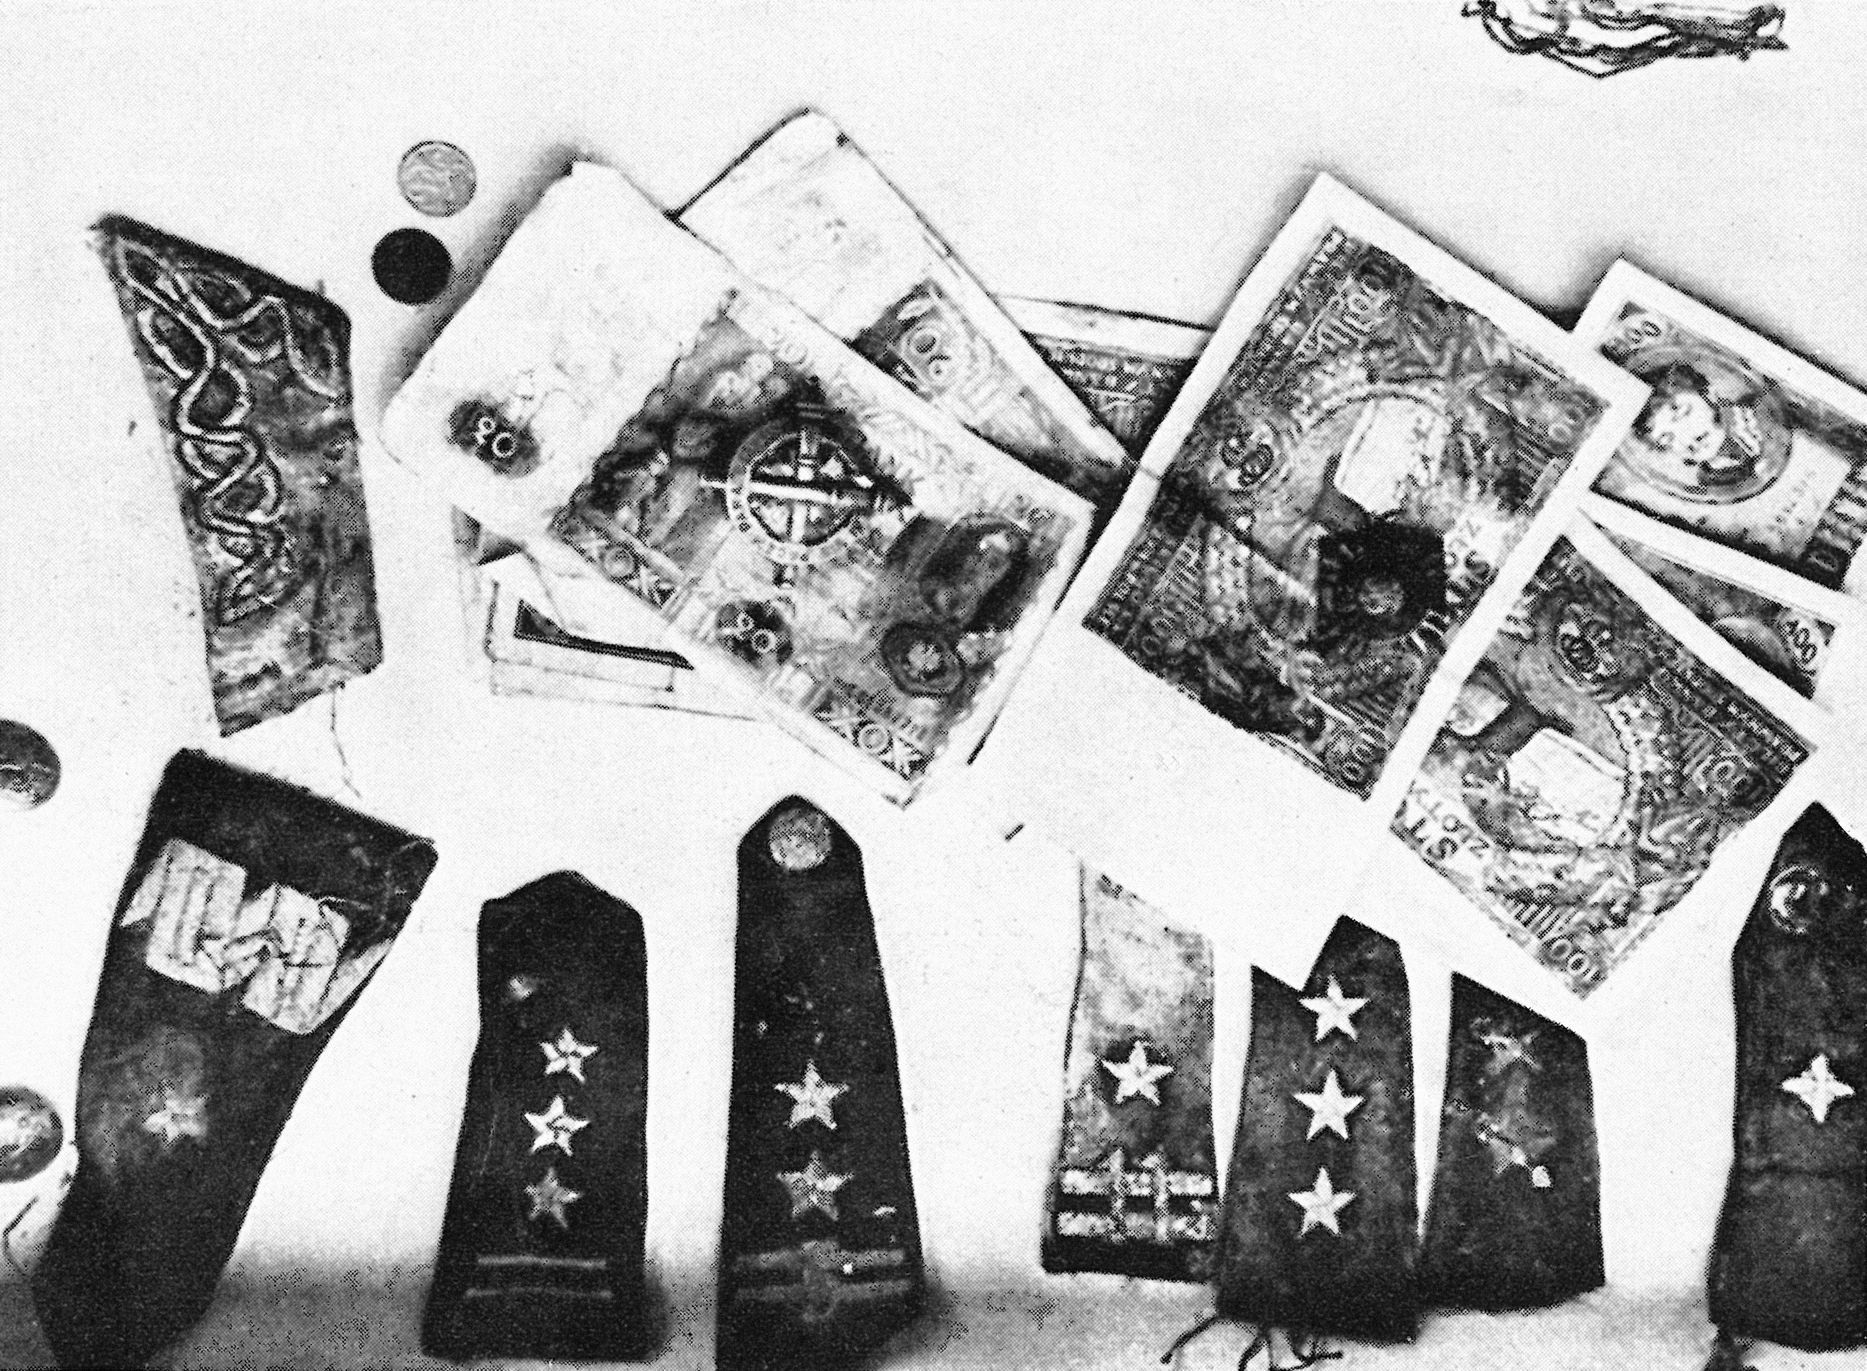 Jednorázové užití / Fotogalerie / Reprofoto z propagandistické knihy „Masová vražda v Katyňi“ vydané nacisty v Berlíně 1943